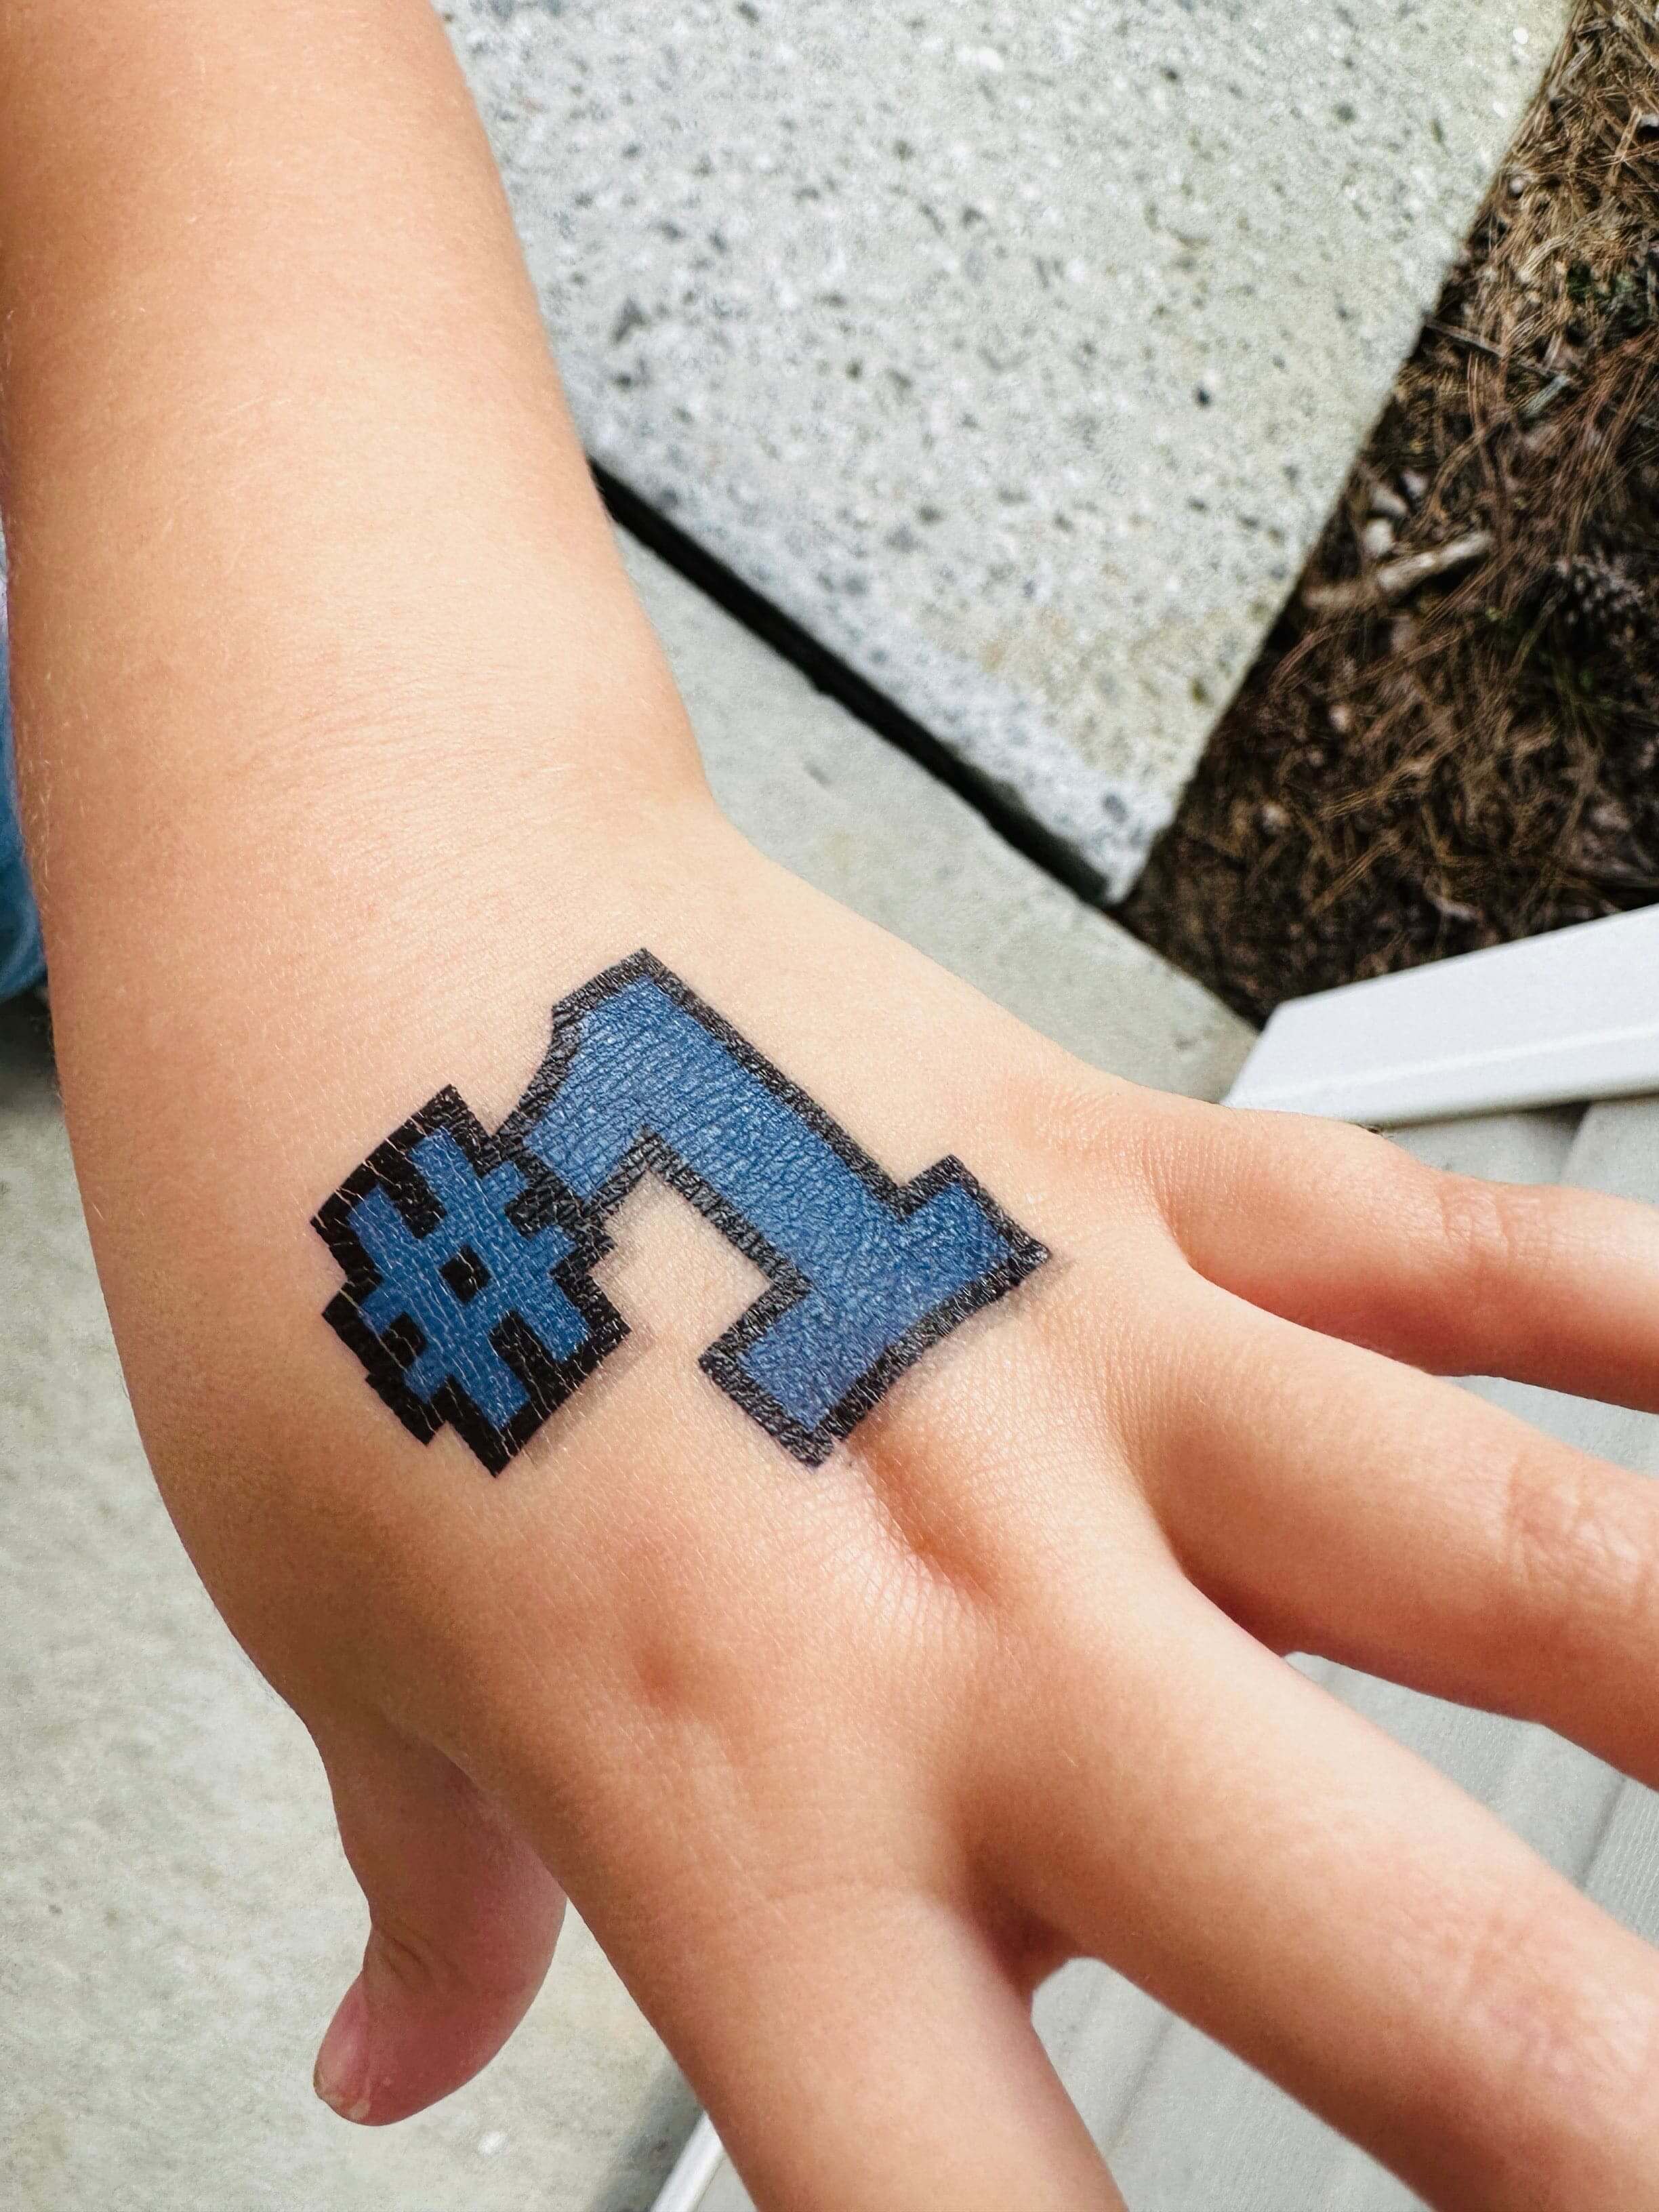 Tattoo uploaded by minerva • Steve from Minecraft tattoo by @armslikewings # minecraft #minecrafttattoo #gamertattoo • Tattoodo